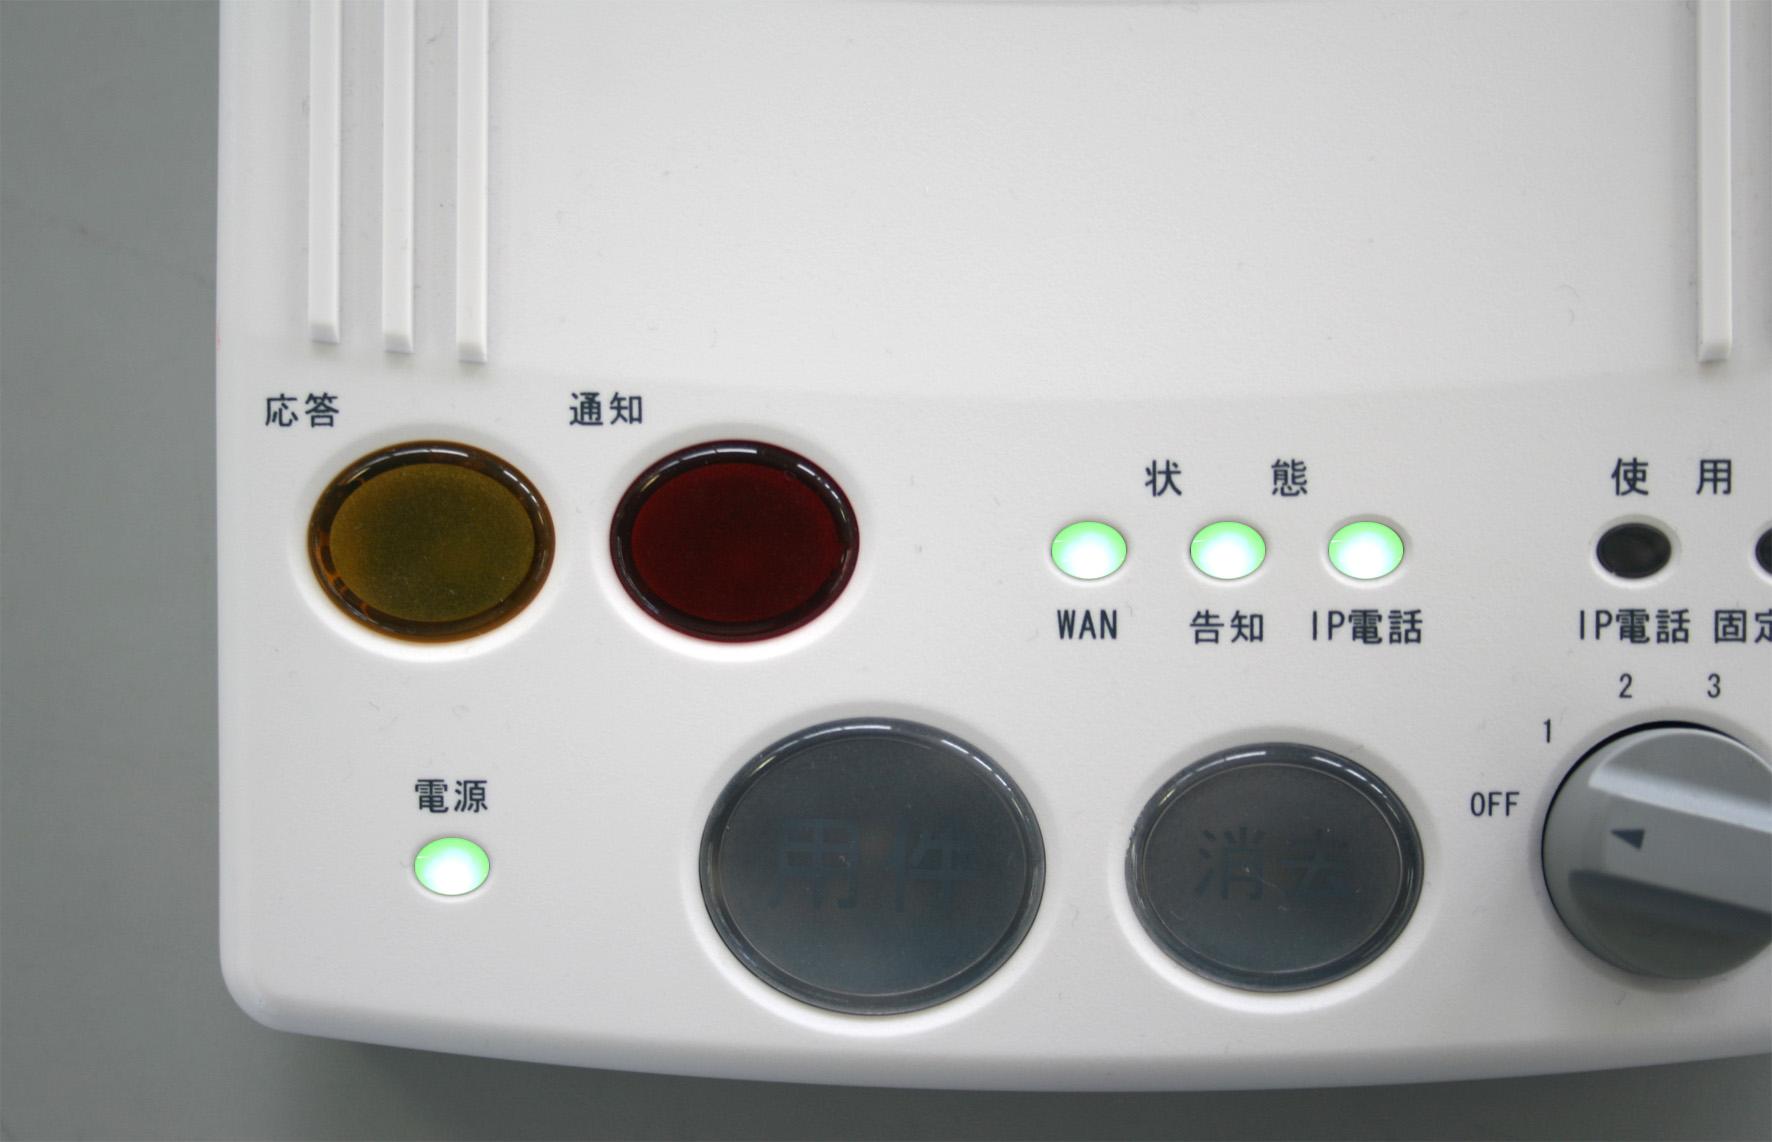 正常な点灯状態（電源ランプと3つの状態ランプが点灯している）の写真